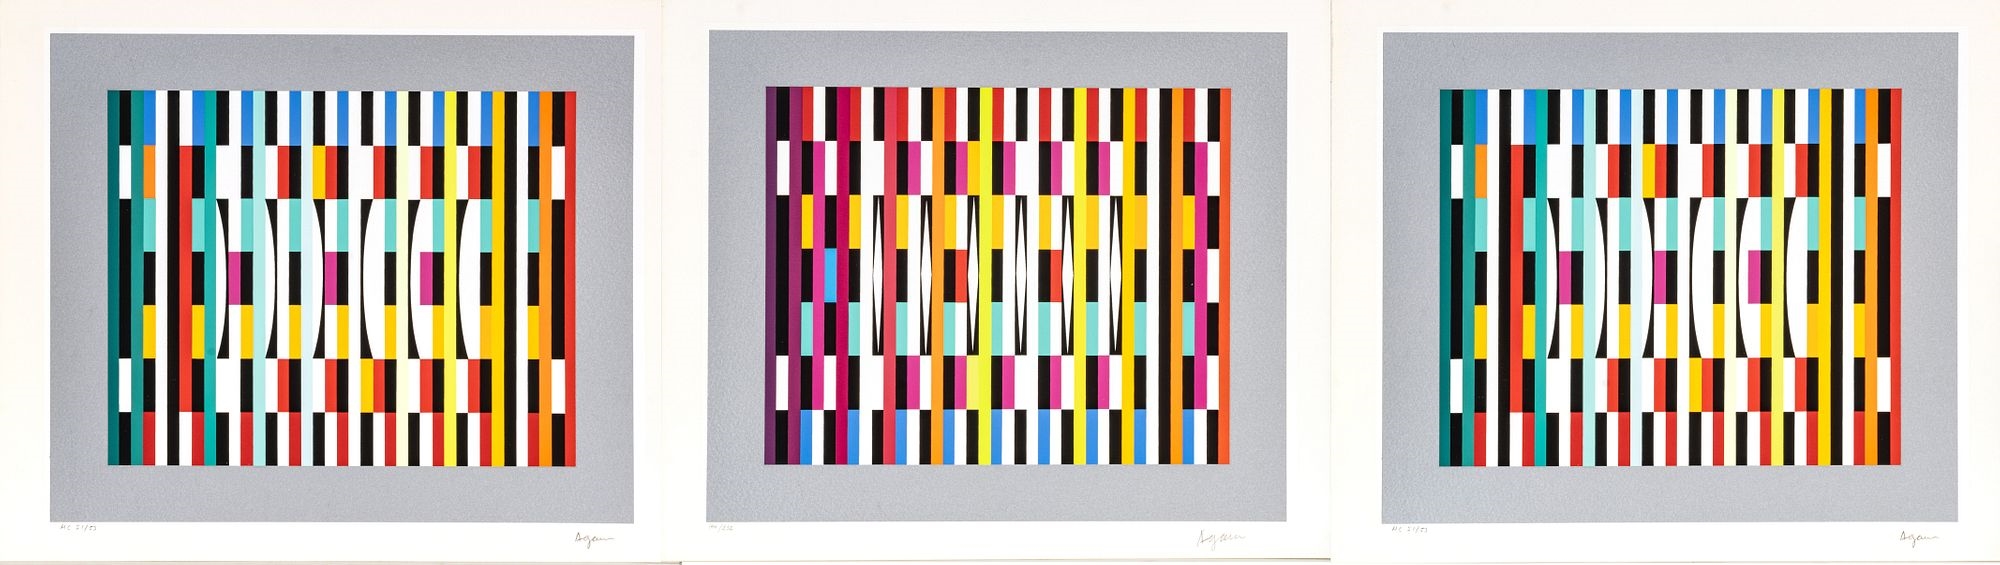 Artwork by Yaacov Agam, Yaacov Agam (Israeli, 1928) Silkscreens In Color On Wove Paper, High Rhythm; Pointed Rhythm; Vertical Rhythm 5, H 9.25'' W 10.75'' 3 pcs, Made of Silkscreens In Color On Wove Paper